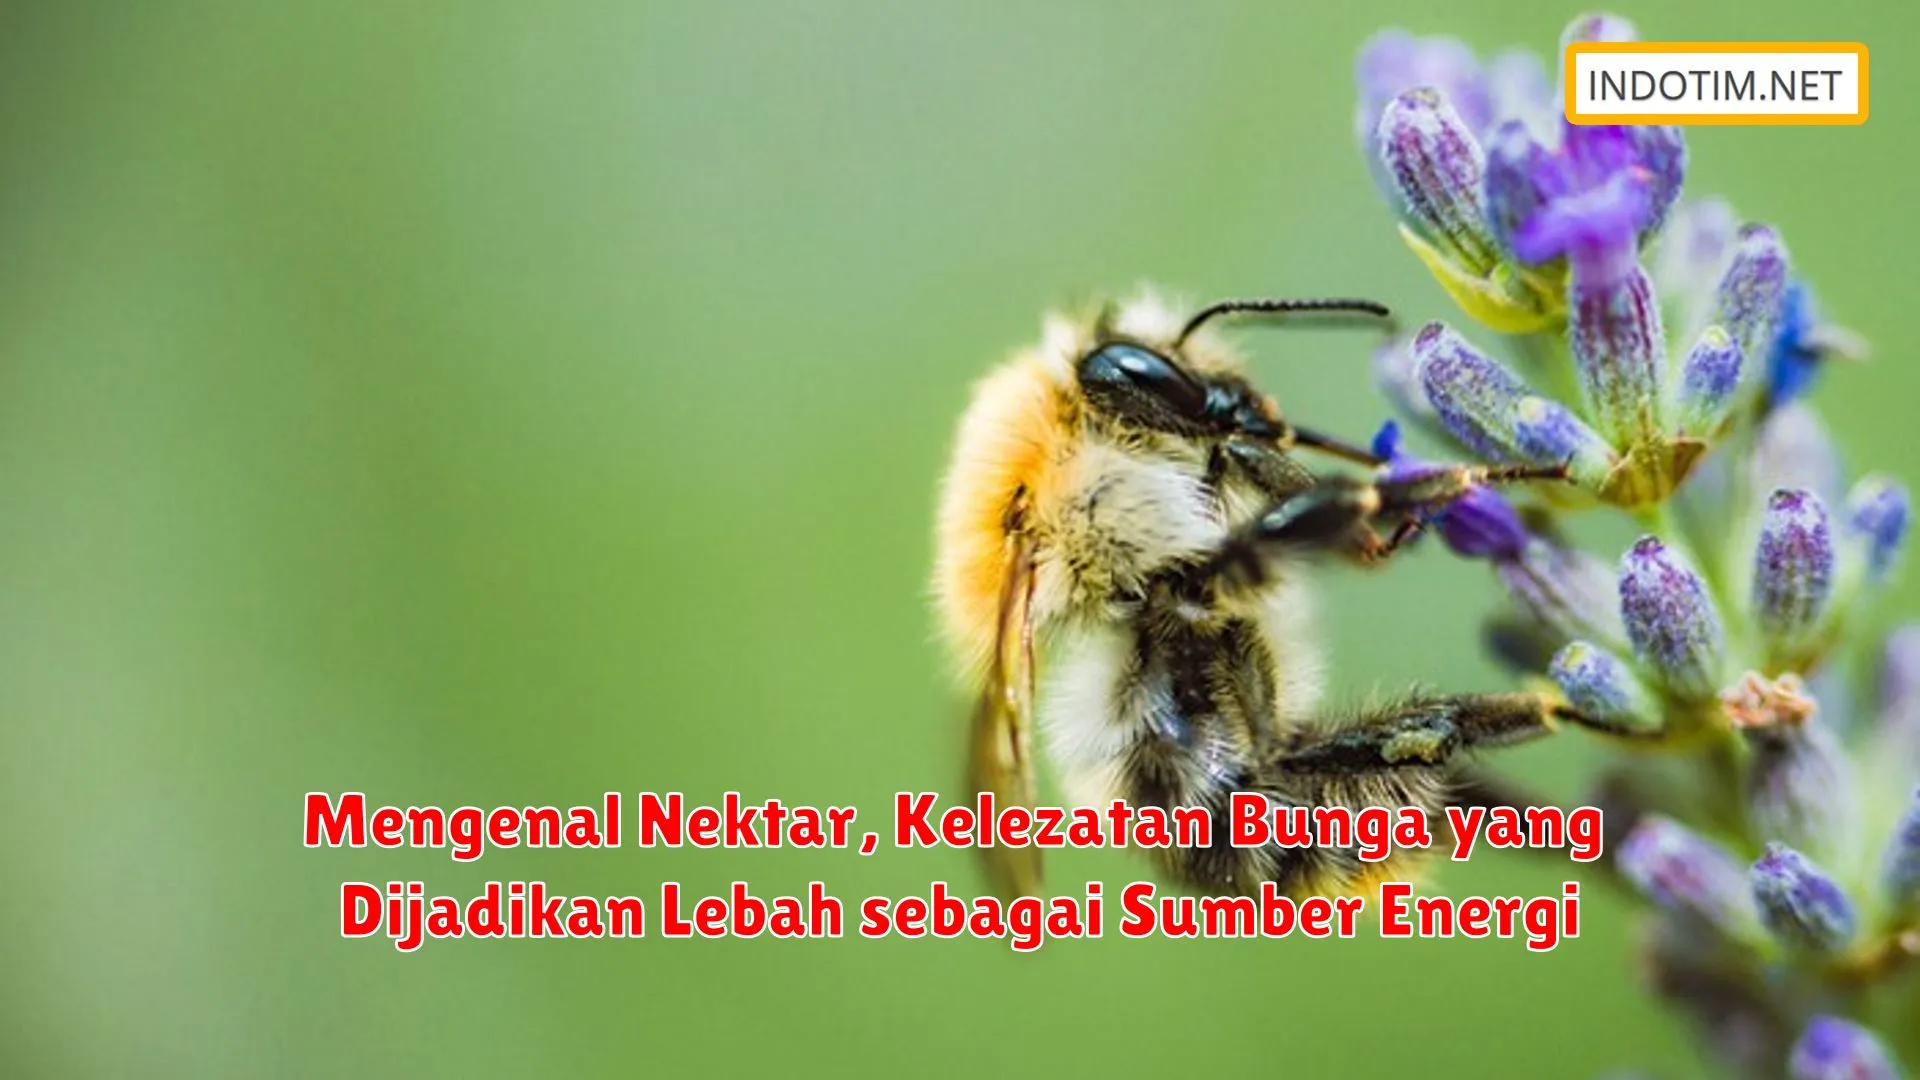 Mengenal Nektar, Kelezatan Bunga yang Dijadikan Lebah sebagai Sumber Energi